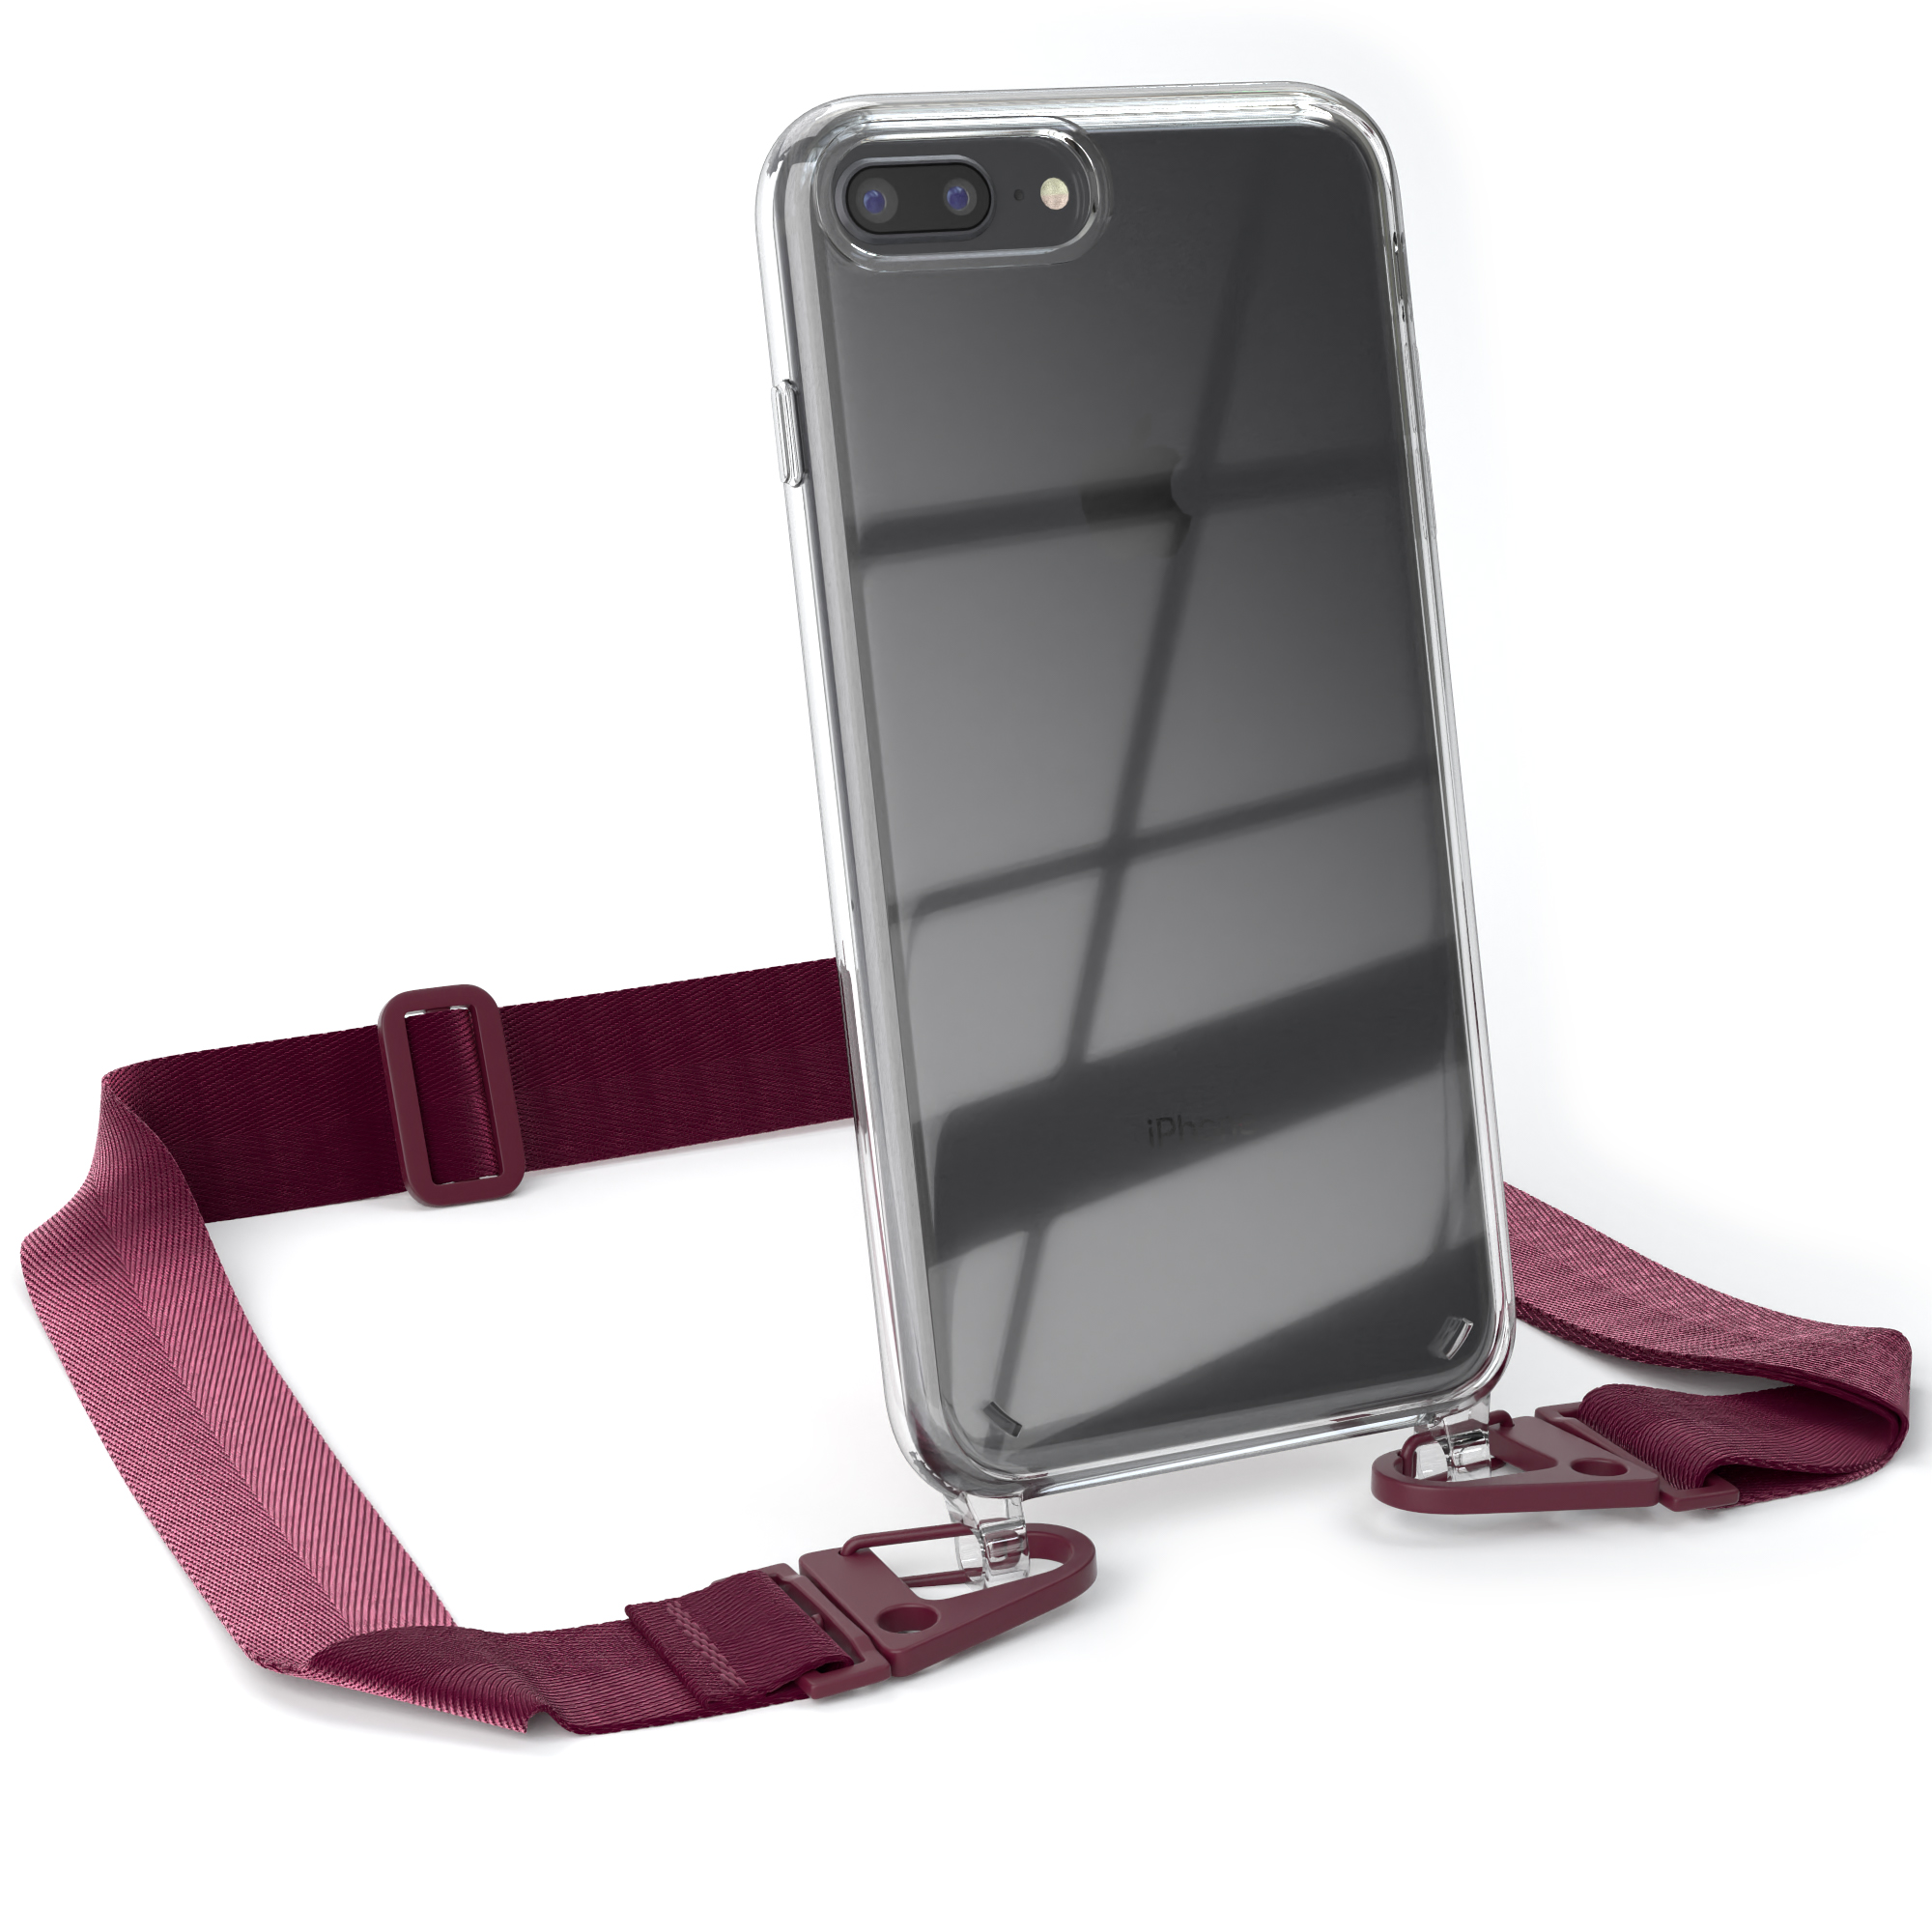 EAZY CASE Transparente Handyhülle Rot Plus, Beere Plus 7 8 Apple, Karabiner, / Kordel iPhone / mit Burgundy + Umhängetasche, breiter